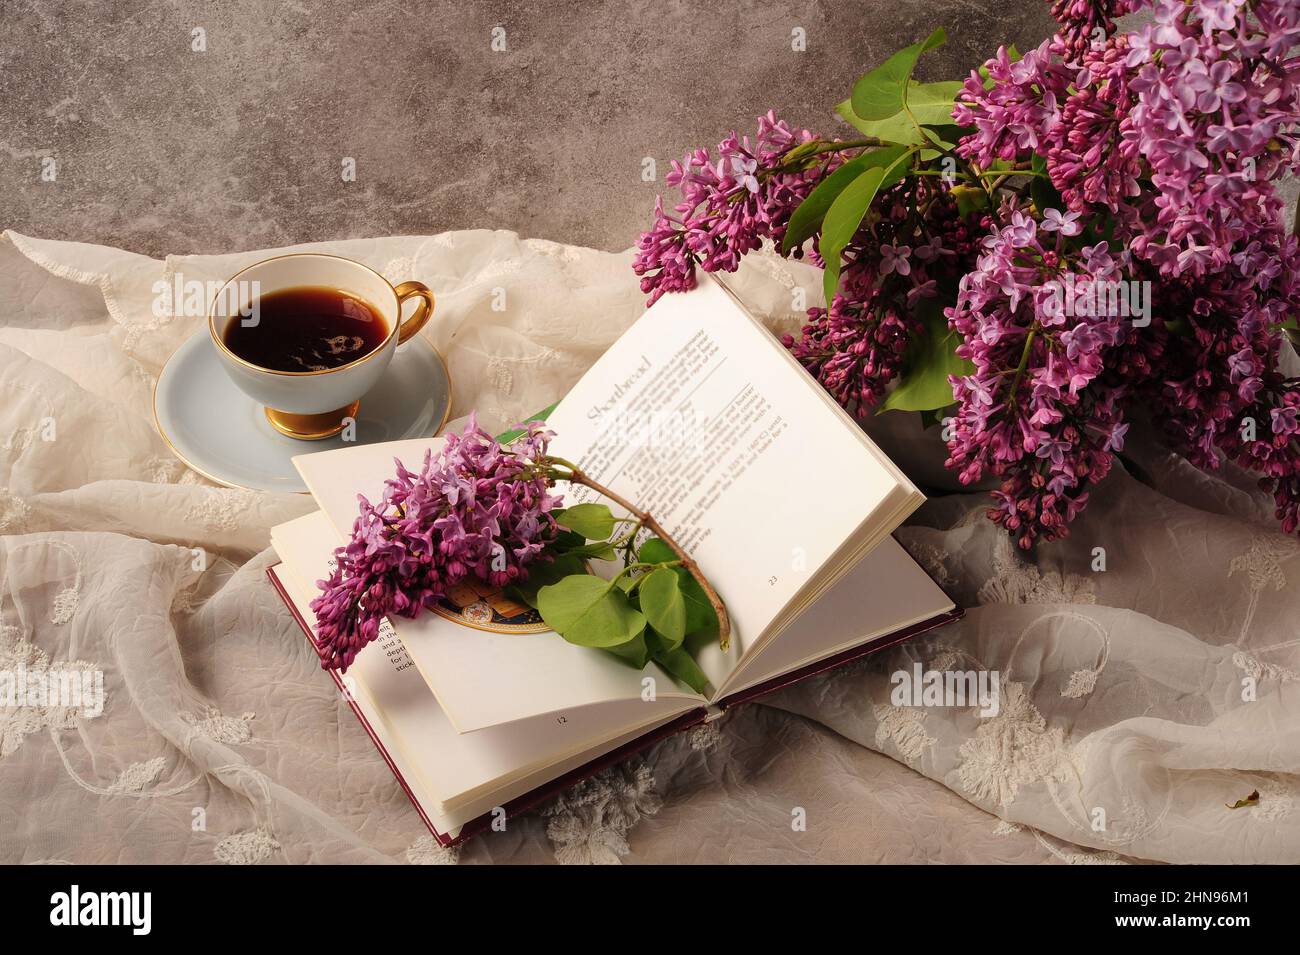 Kochbuch, Kaffee und Flieder-Bouquet wunderschön auf besticktem weißen Tischtuch arrangiert. Stockfoto